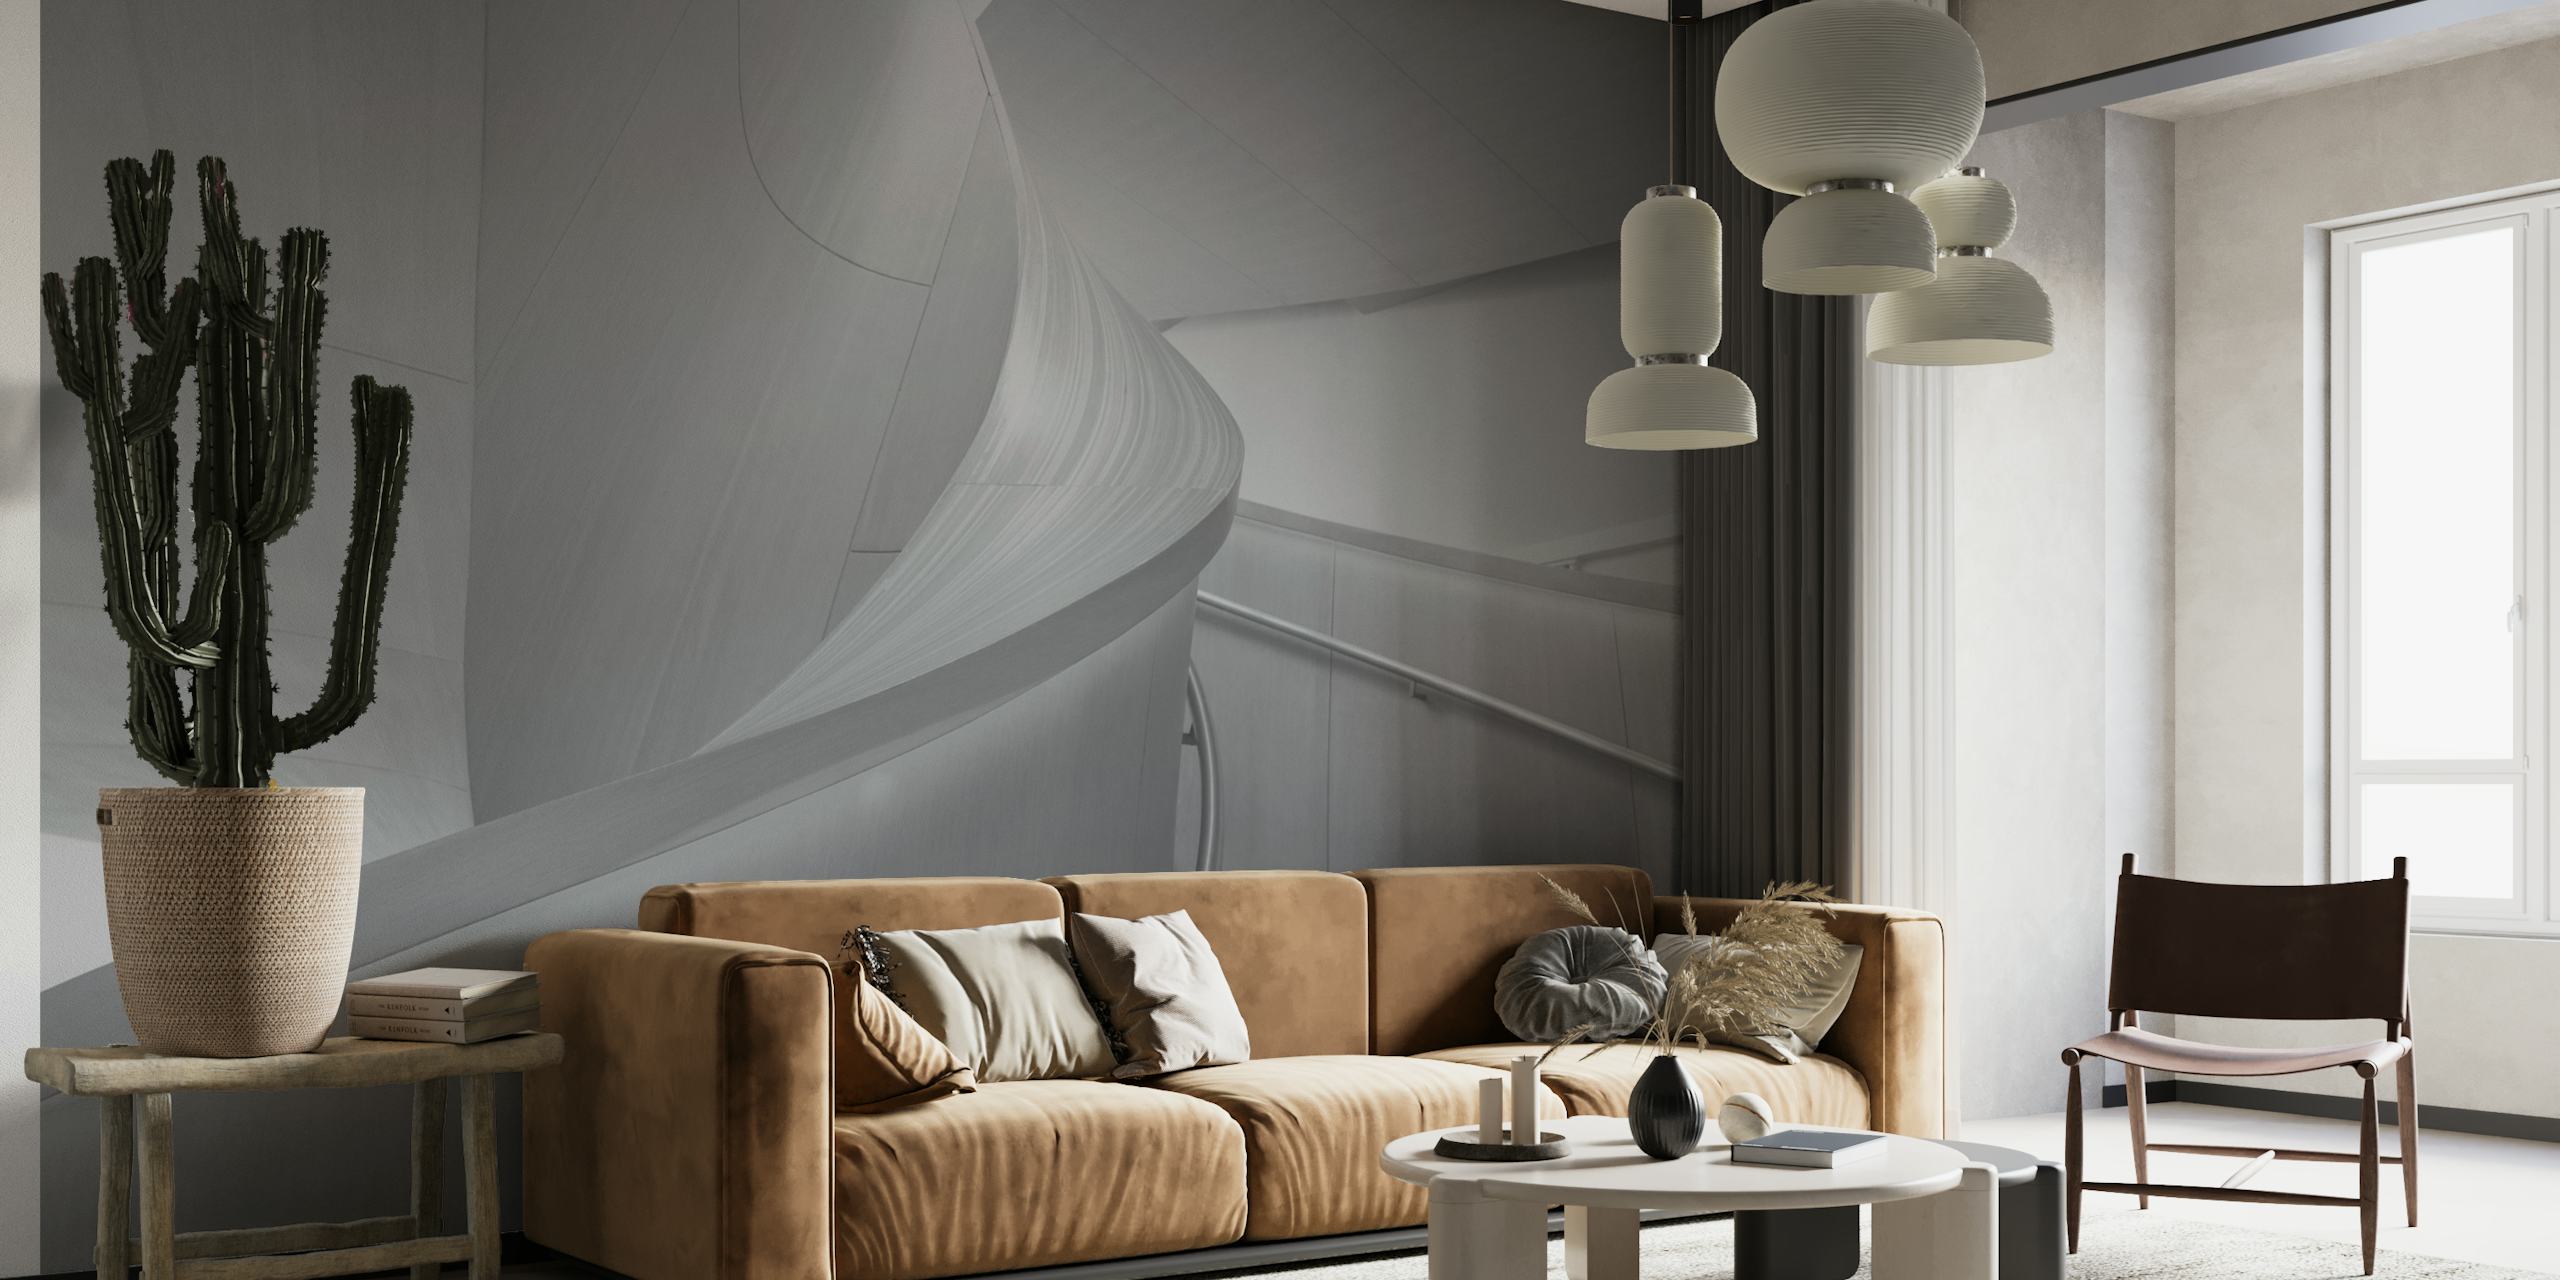 Mural de parede com linhas e curvas abstratas em tons de cinza transmitindo uma estética moderna